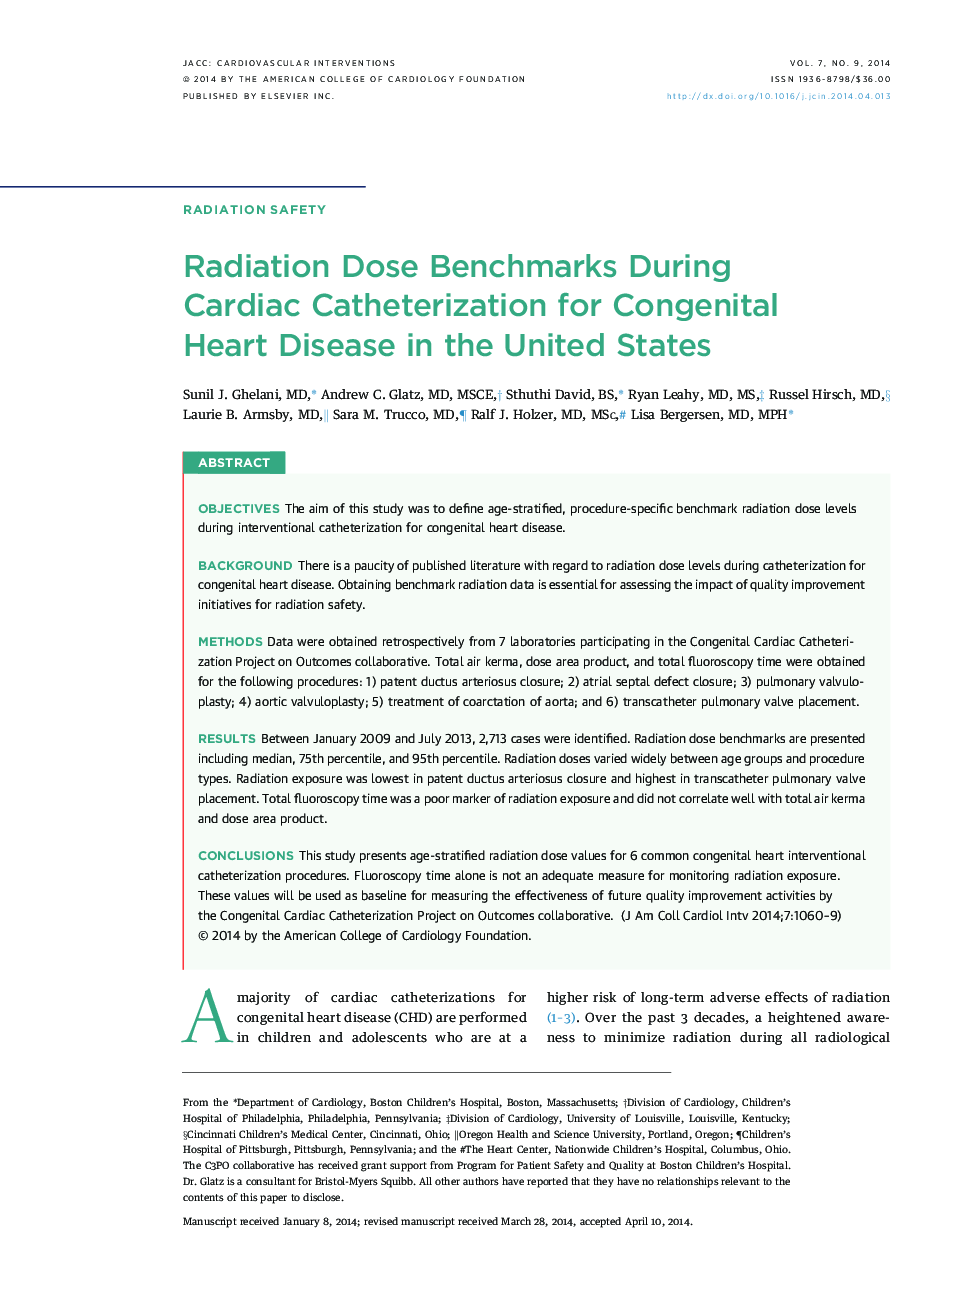 معیارهای پرتودرمانی در طی کاتتریزاسیون قلب برای بیماری های مادرزادی قلبی در ایالات متحده 